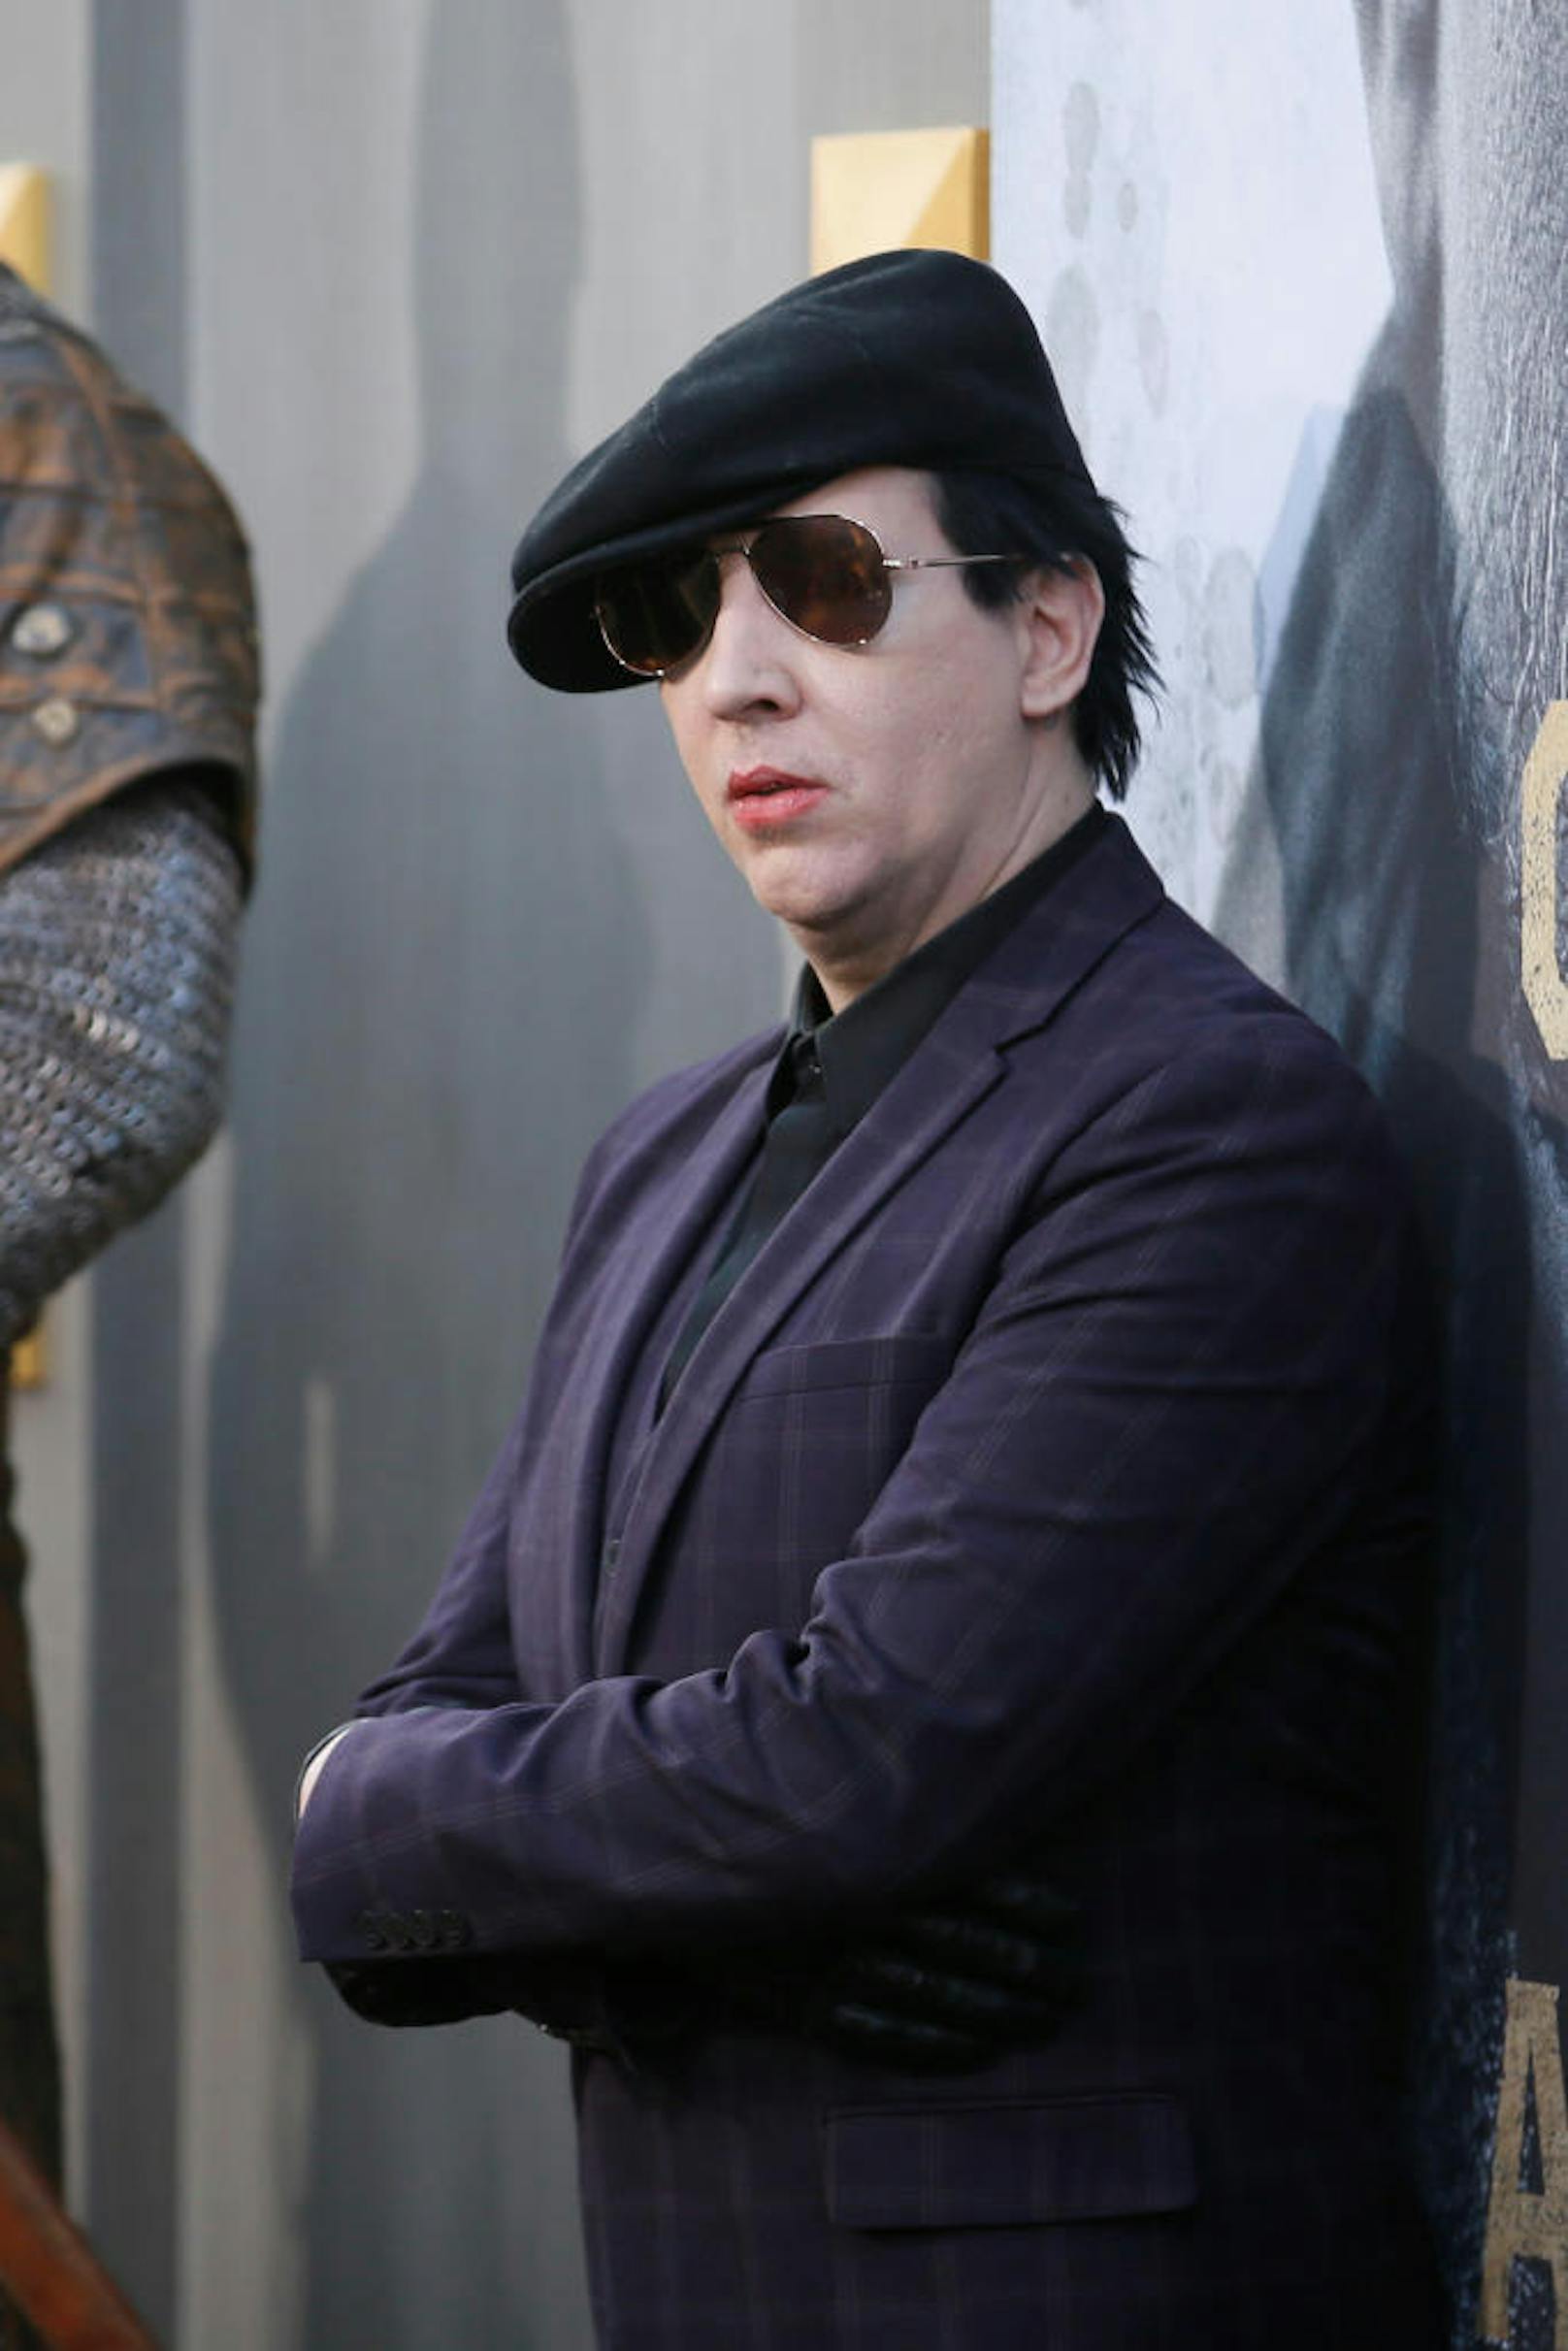 Der amerikanische Musiker und Sänger Marilyn Manson - bürgerlich Brian Warner.